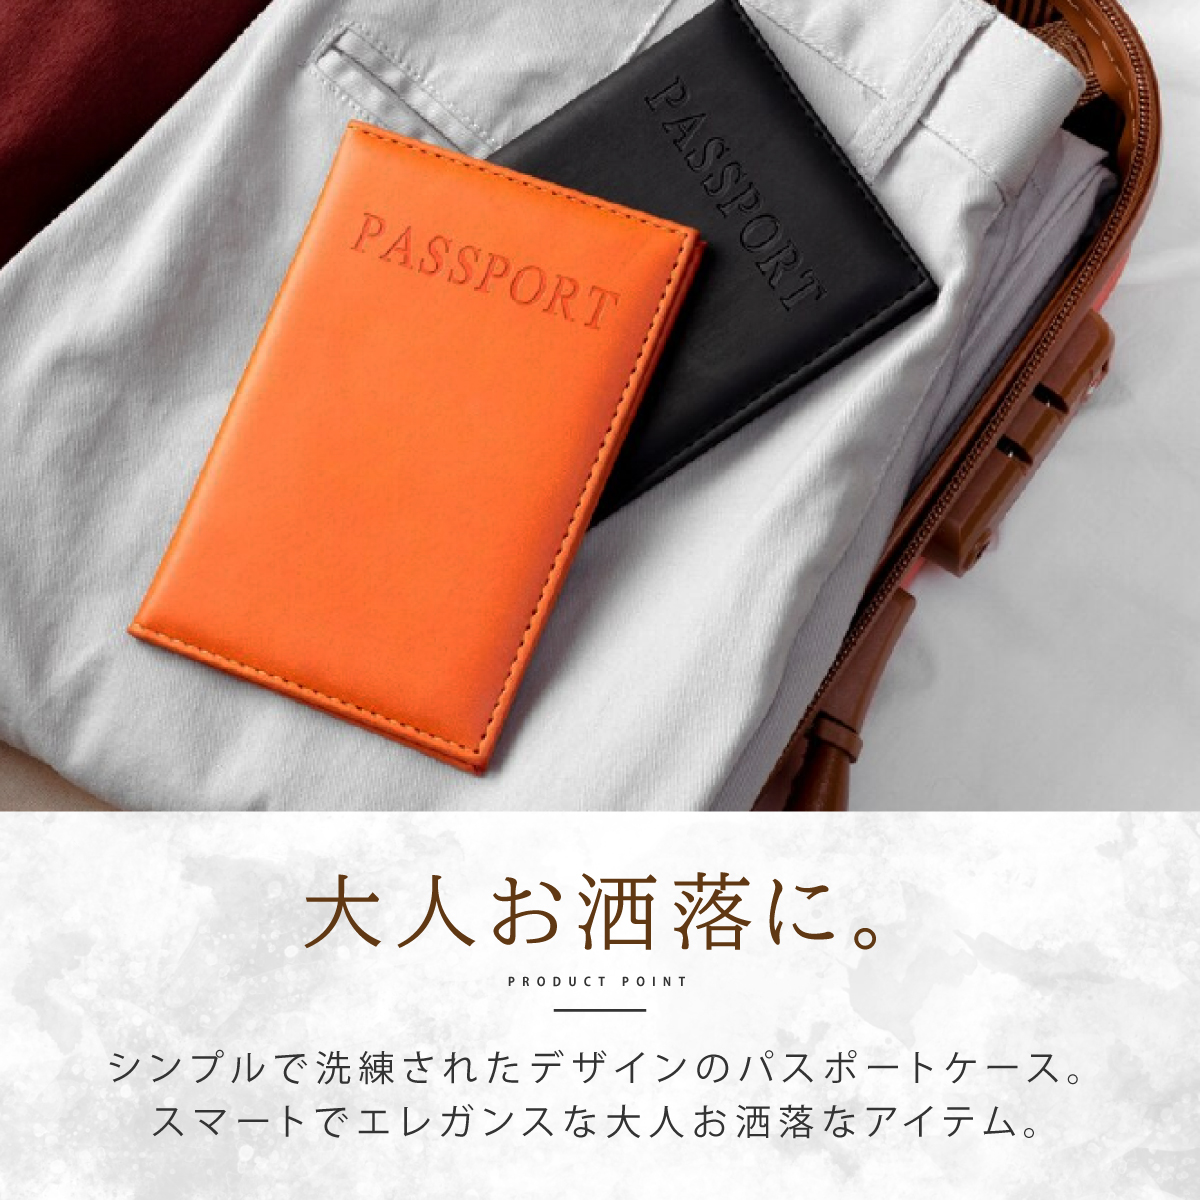  паспорт кейс скимминг предотвращение кожа тонкий водонепроницаемый чёрный авиабилет inserting кошелек небольшая сумочка кожа прозрачный мужской Корея 